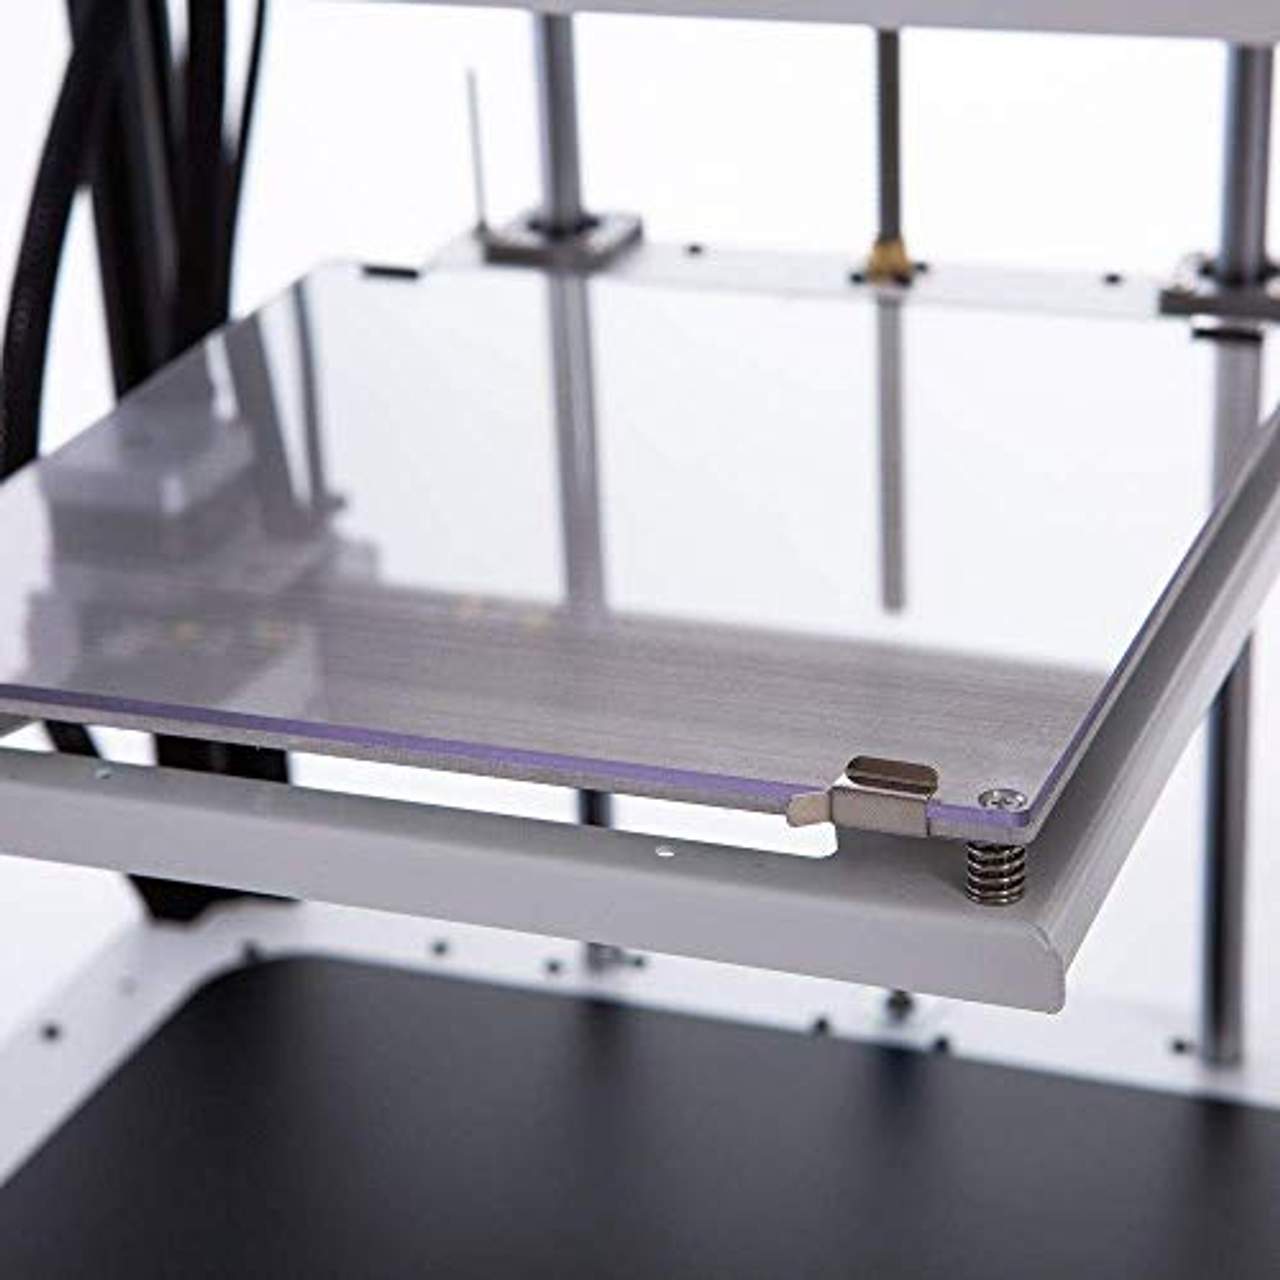 UWY Neuester 3D-Drucker Unabhängiger Dual-Extruder-Vollmetallrahmen